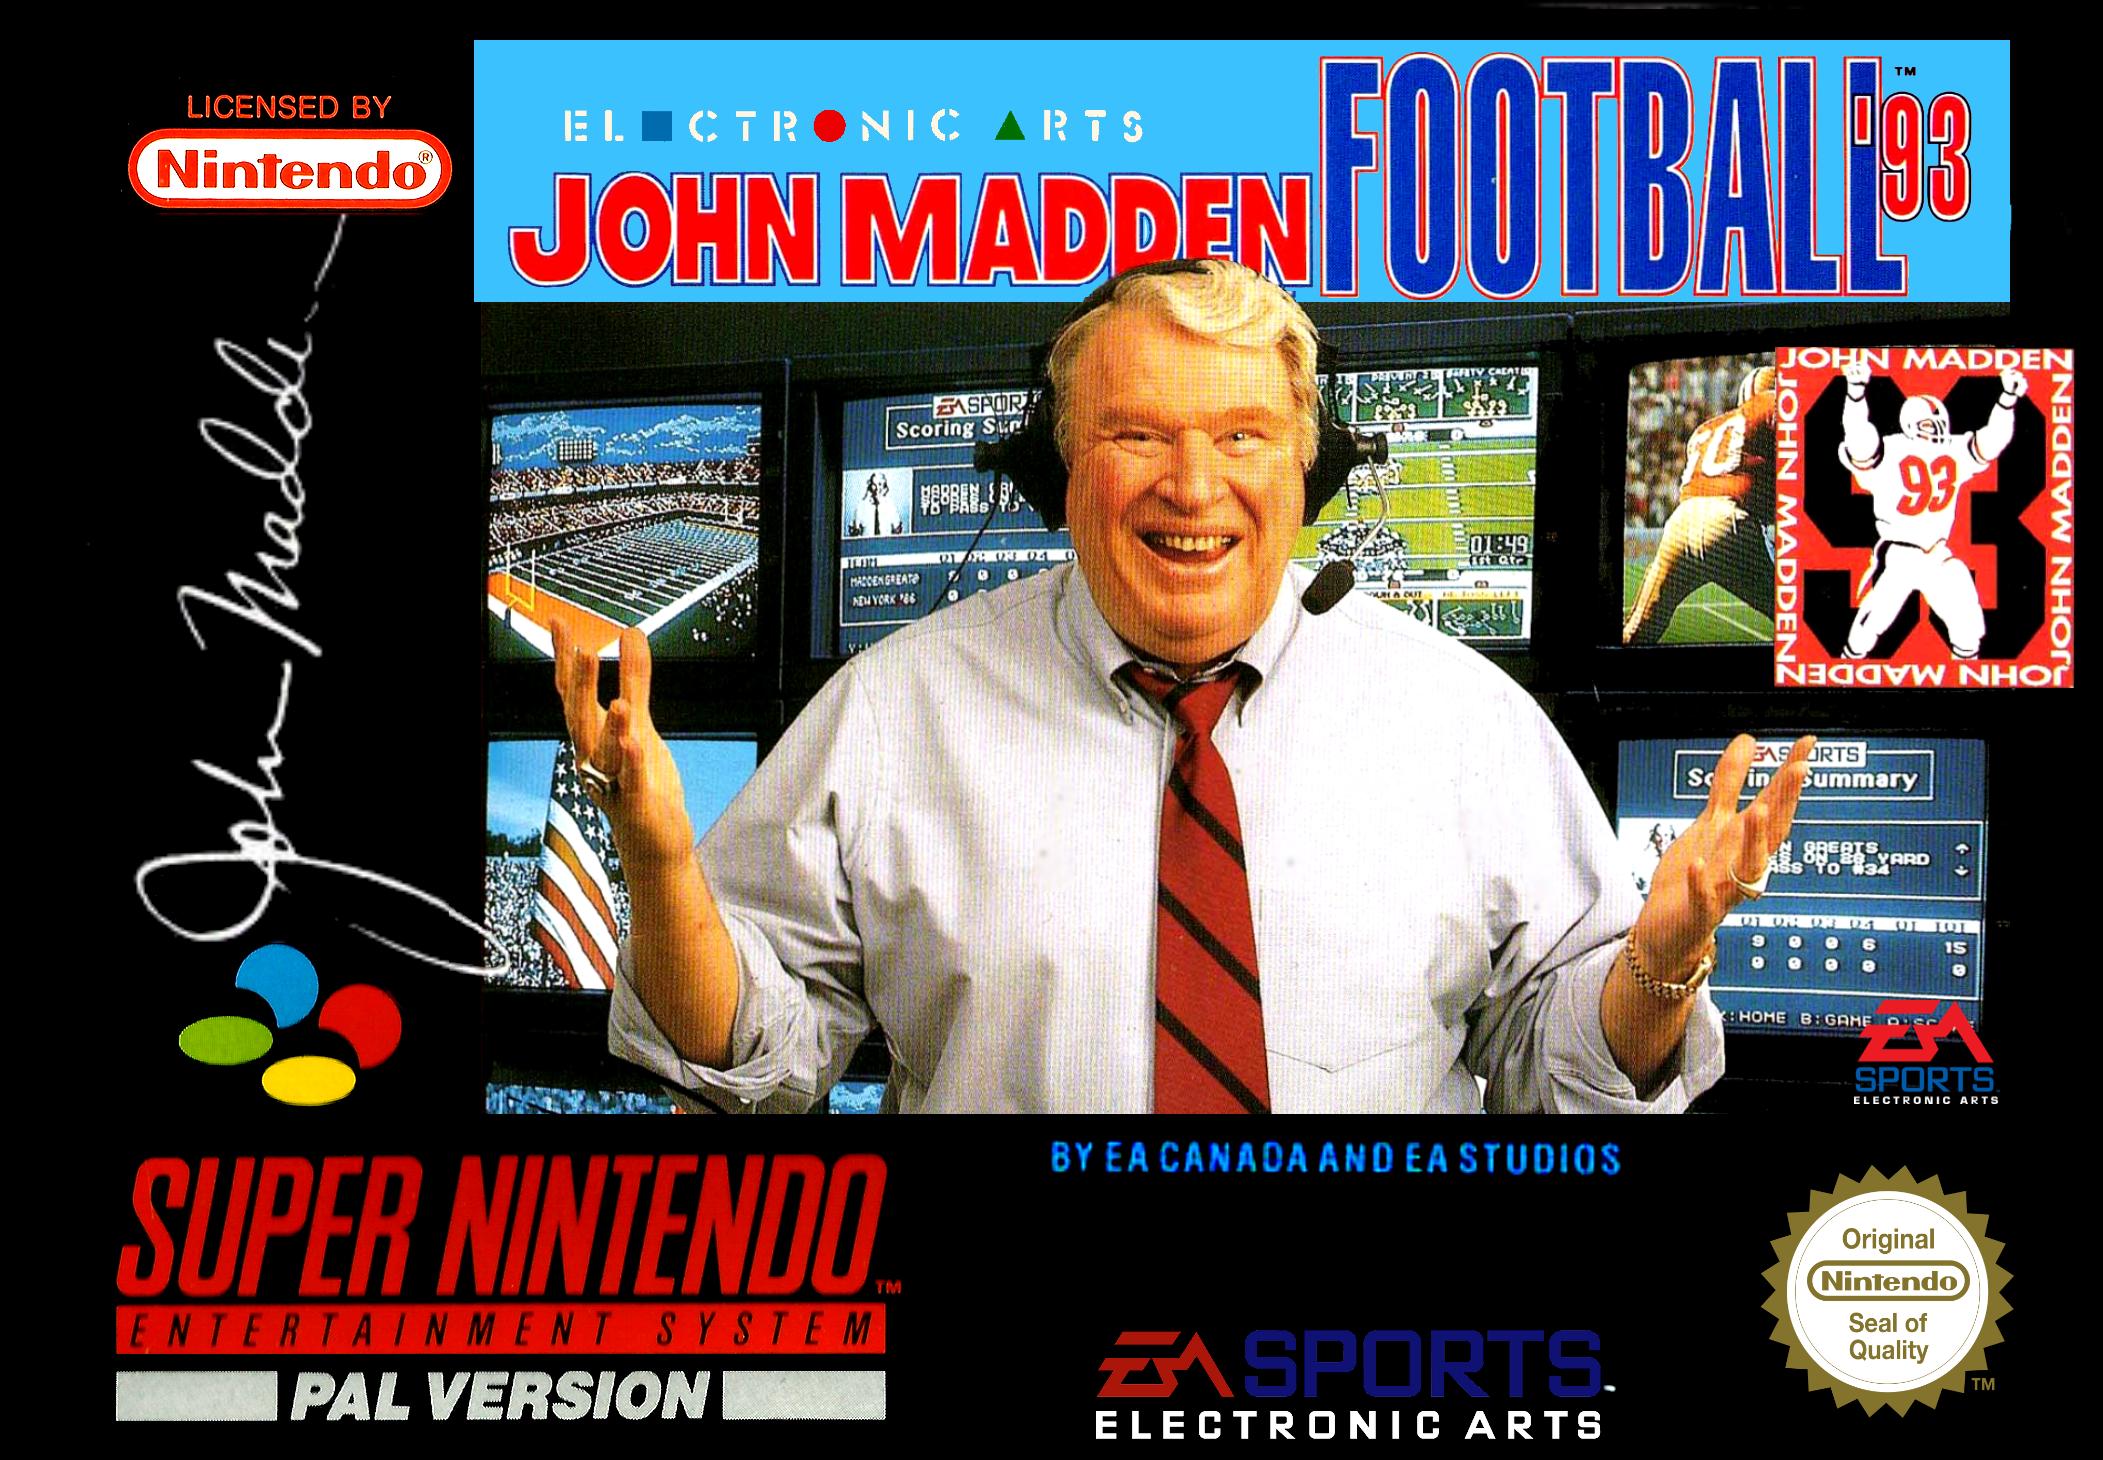 John Madden Football 93 (Csak a kazetta) - Super Nintendo Entertainment System Játékok